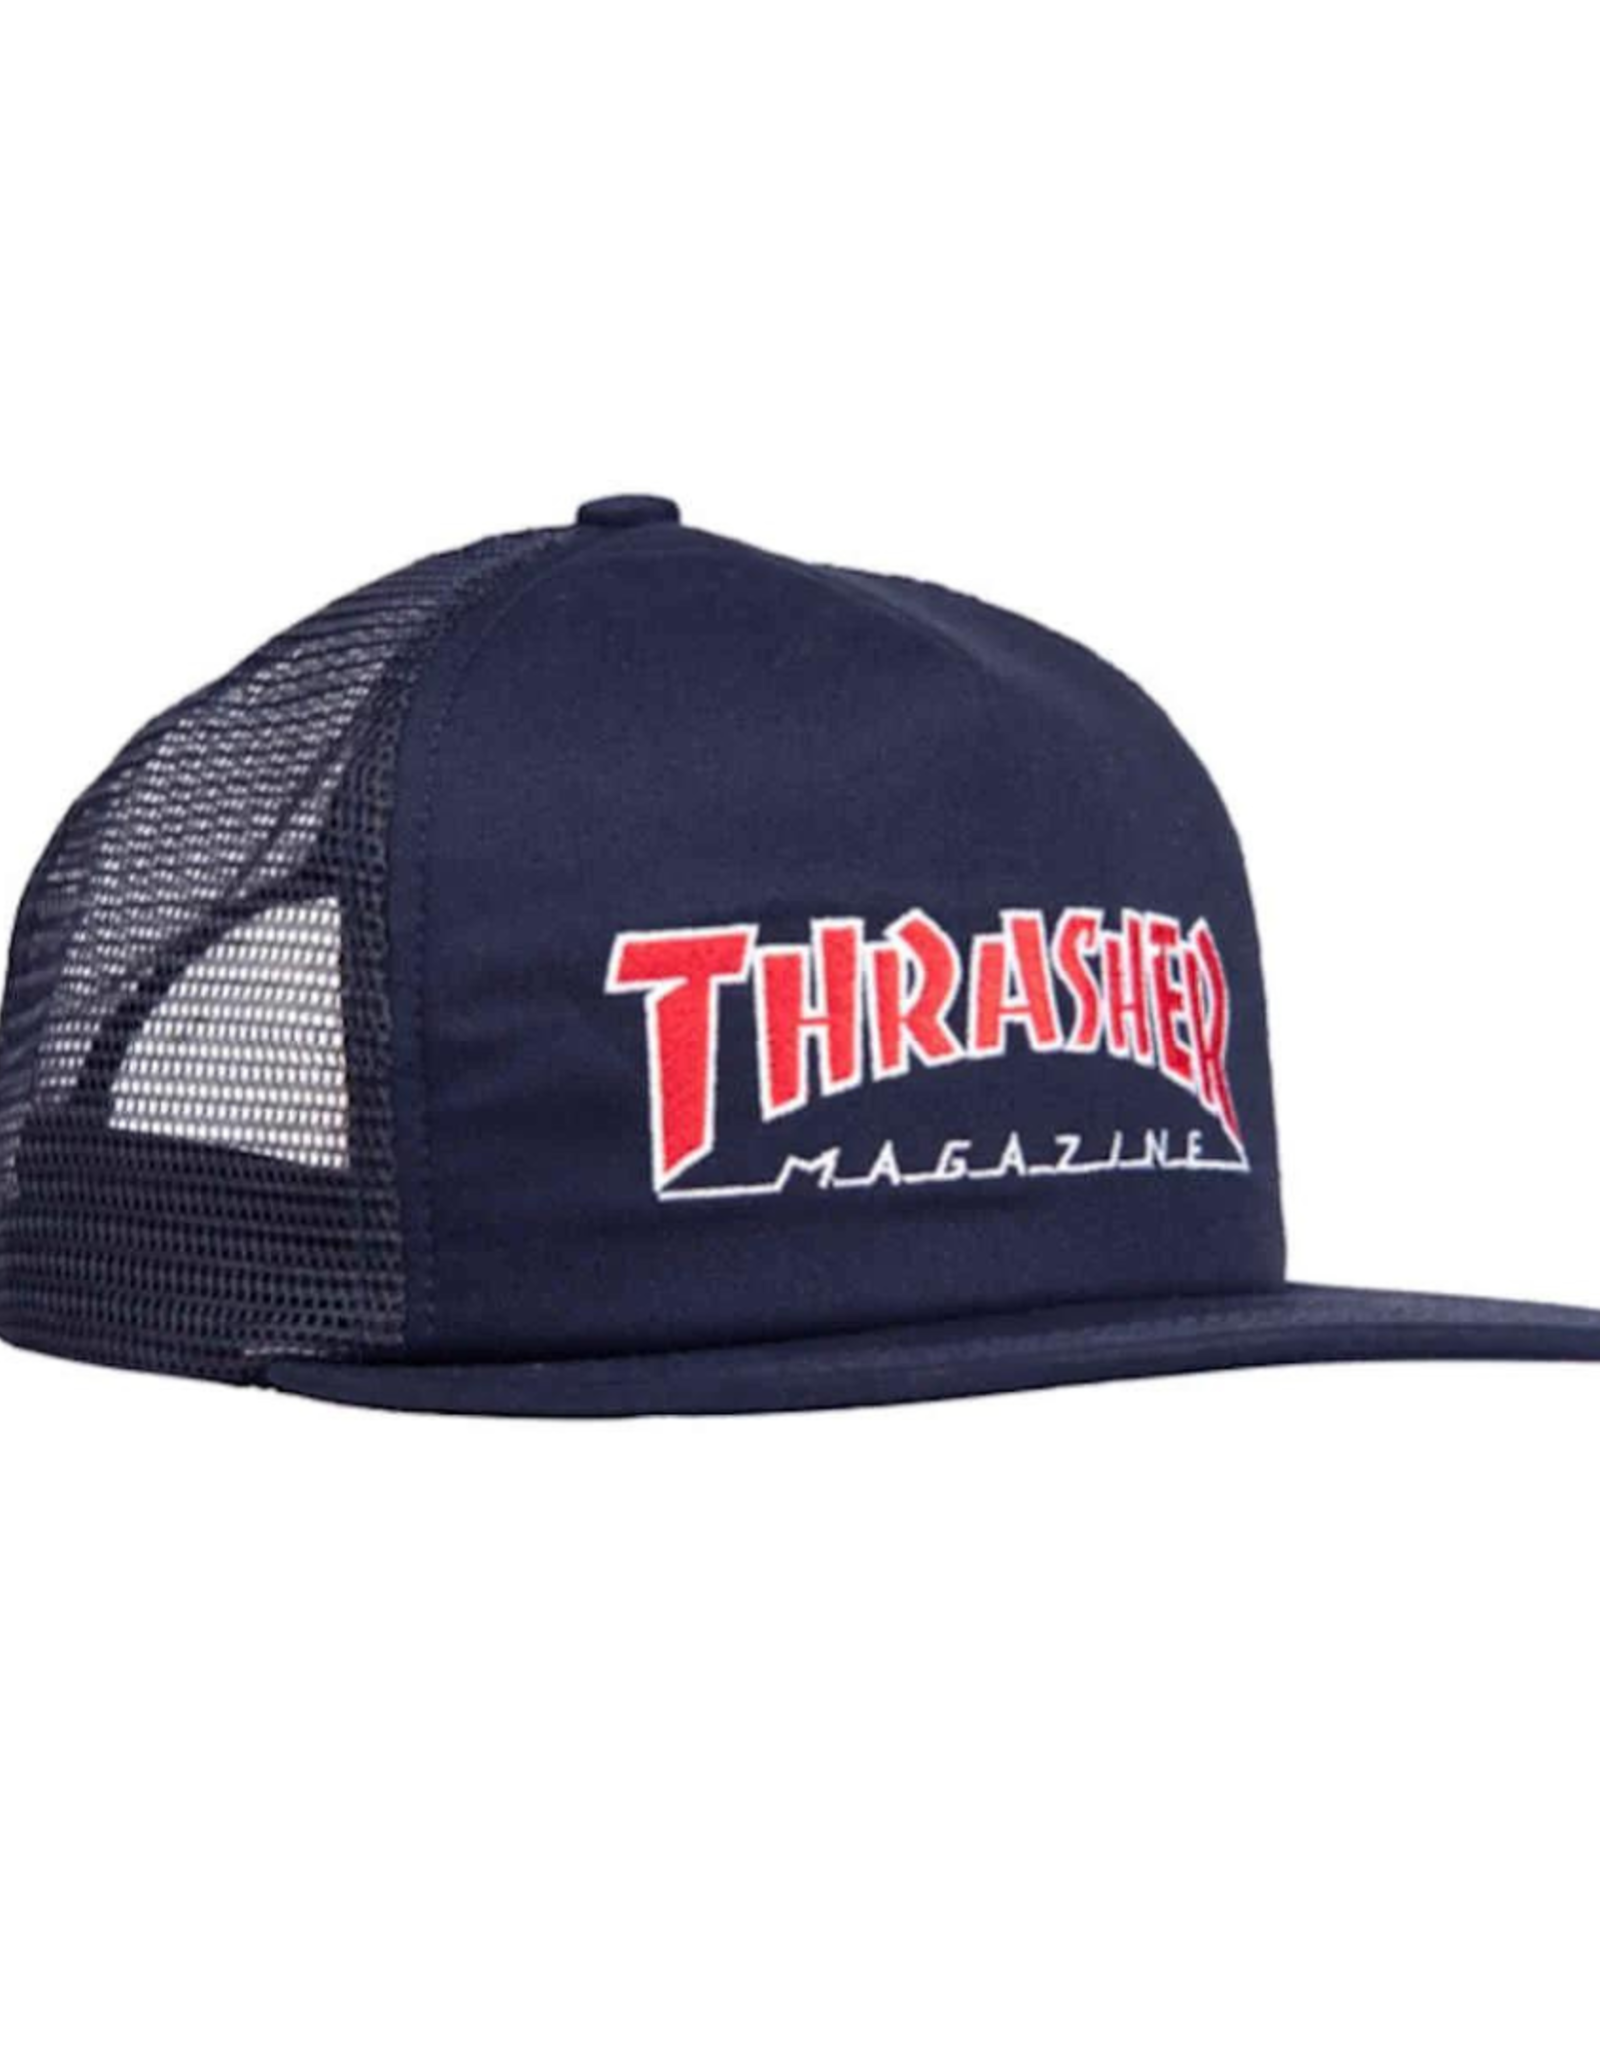 THRASHER THRASHER - OUTLINED MESH CAP - NAVY